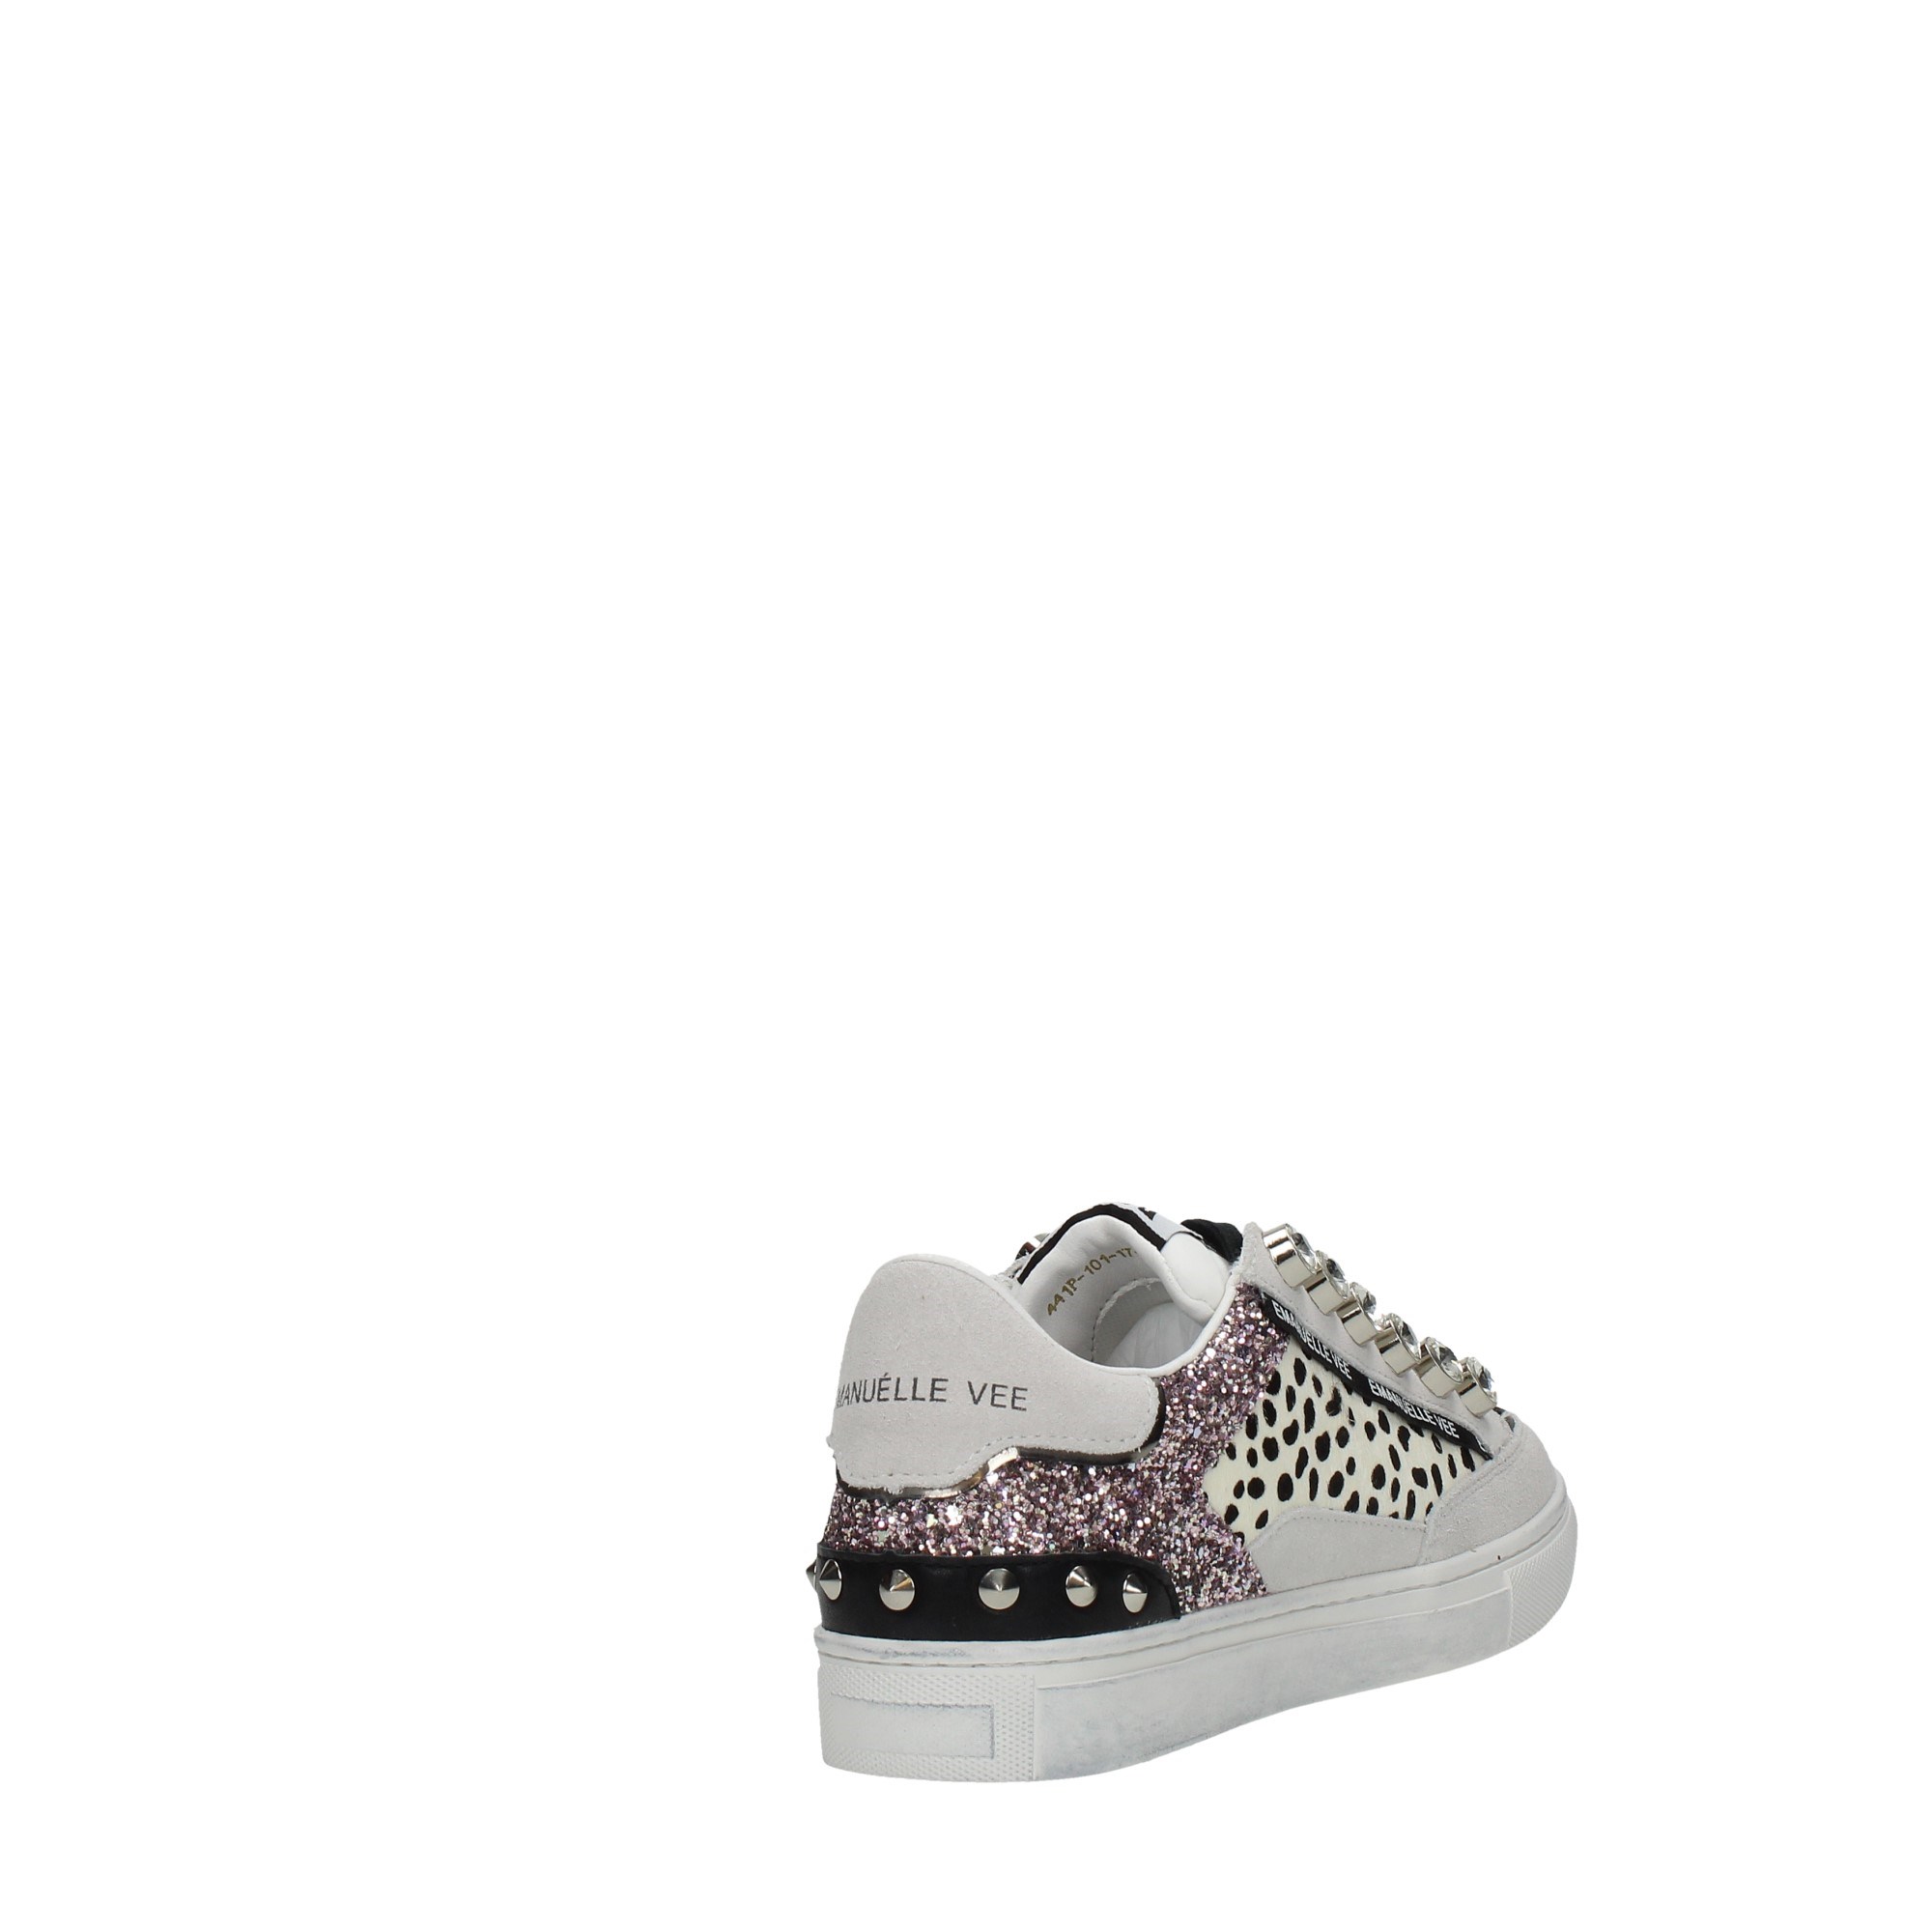 Emanuelle Vee Scarpe Donna Sneakers Multicolor 411P/101/17/P011CB-W